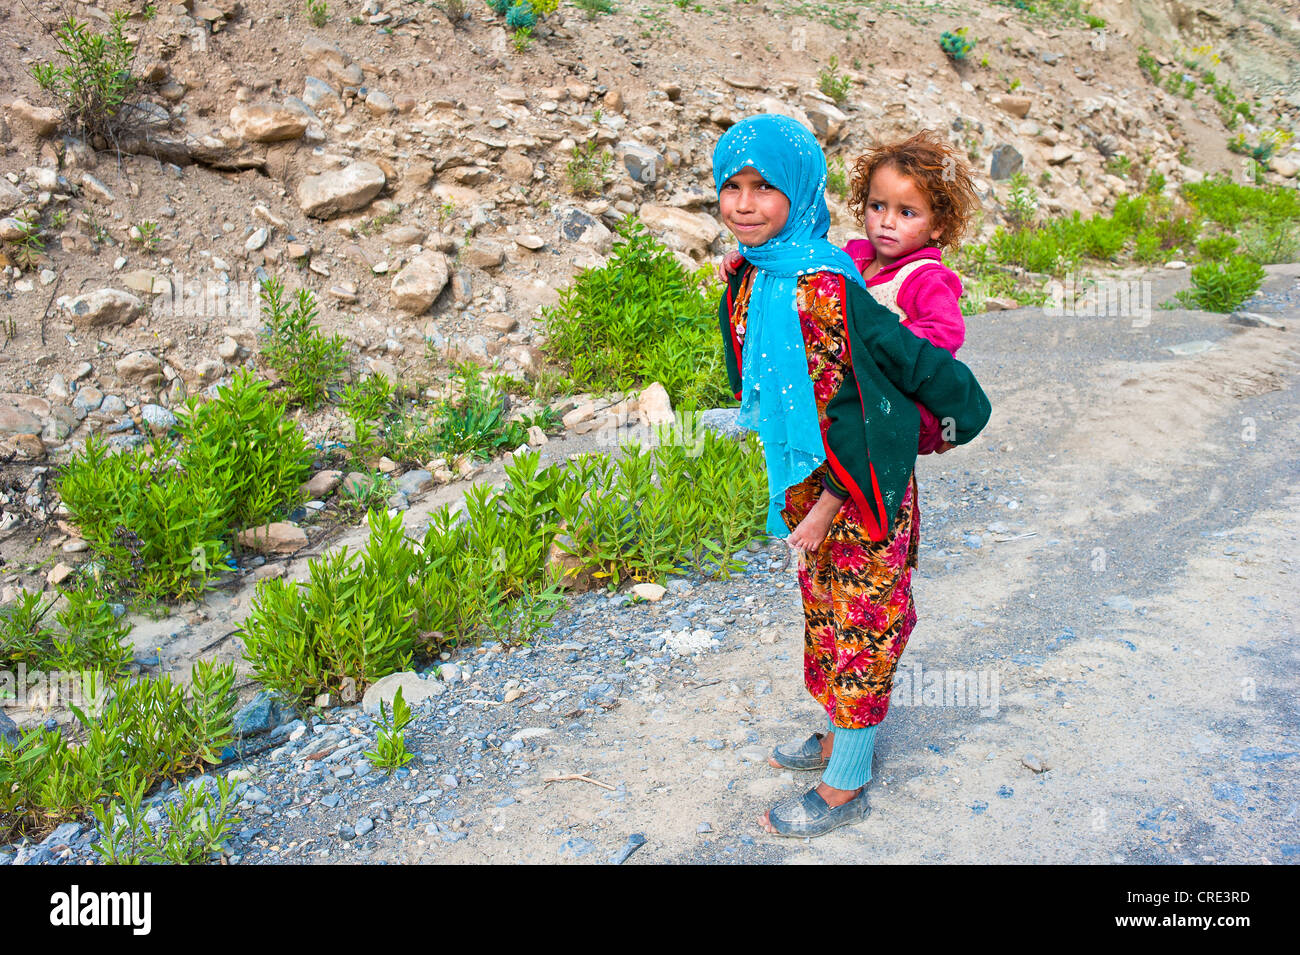 Giovane ragazza che indossa un capo blu sciarpa e portando la sua sorella più giovane in una imbracatura sulla sua schiena, Alto Atlante, Marocco Foto Stock